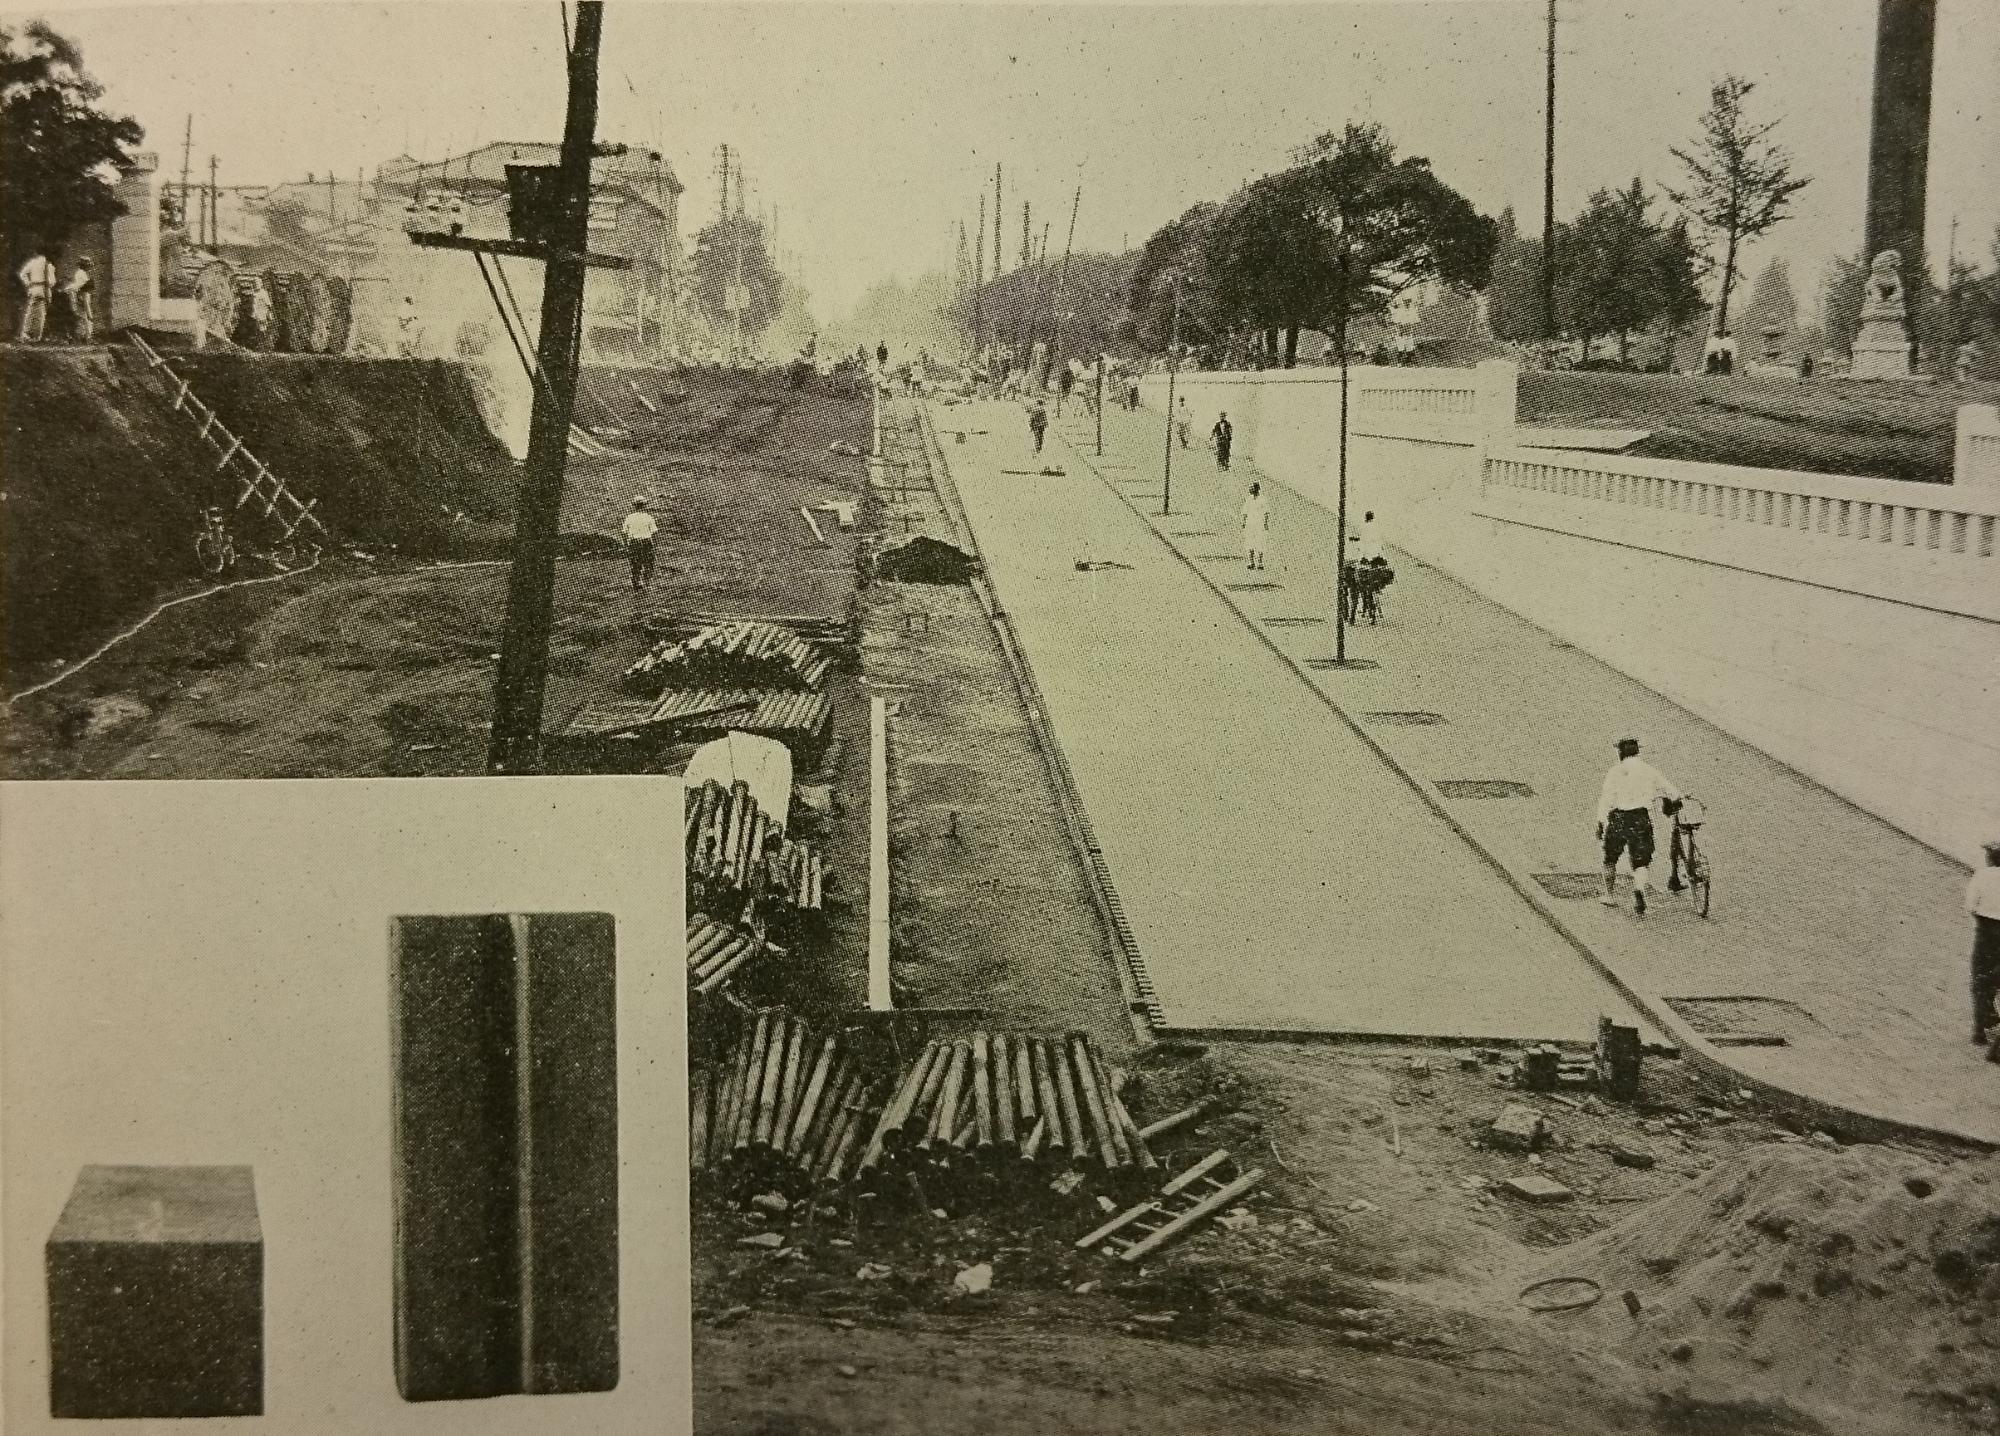 左側の道路の傾斜を緩やかにする工事が行われており、右側を人々が歩いている様子の白黒写真